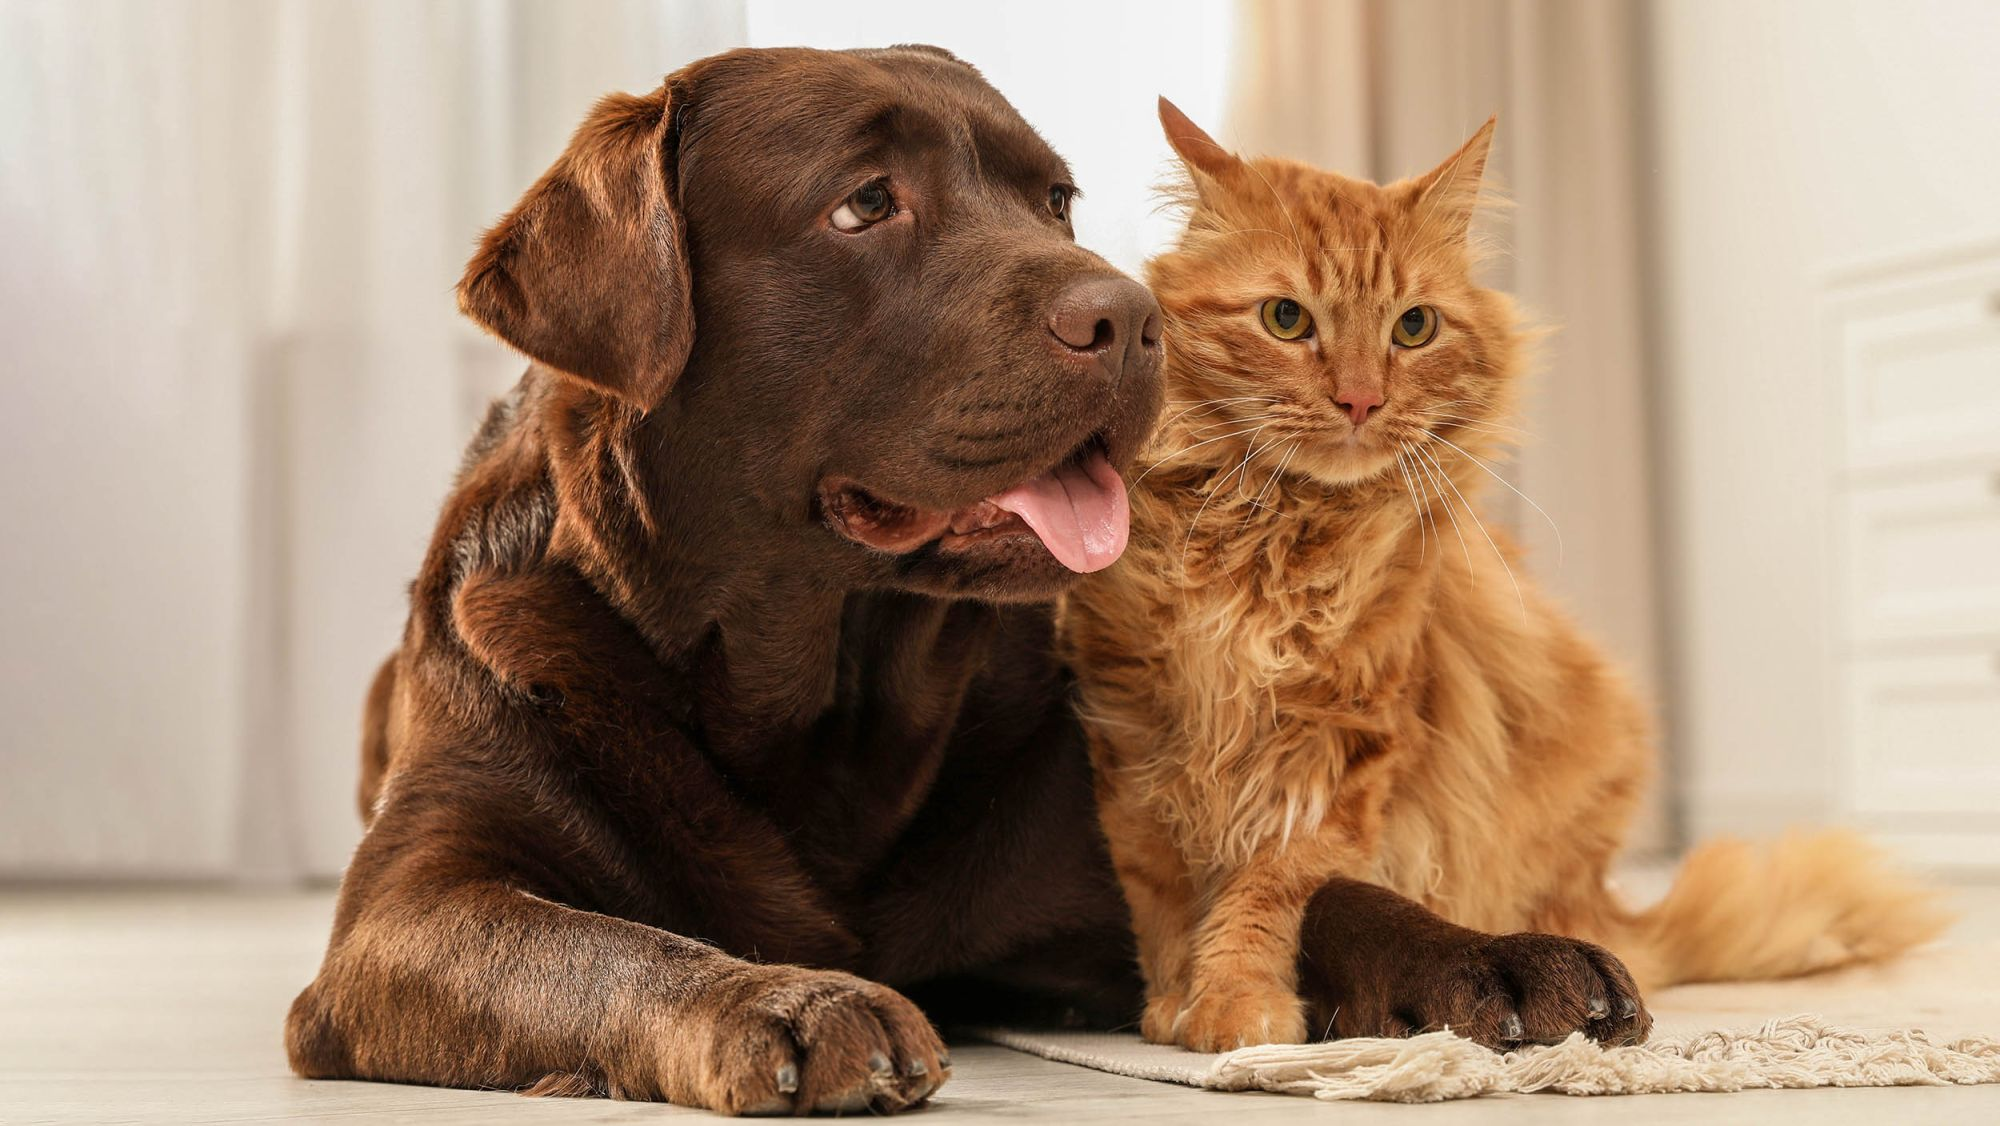 Chocolate Labrador Retriever and ginger cat